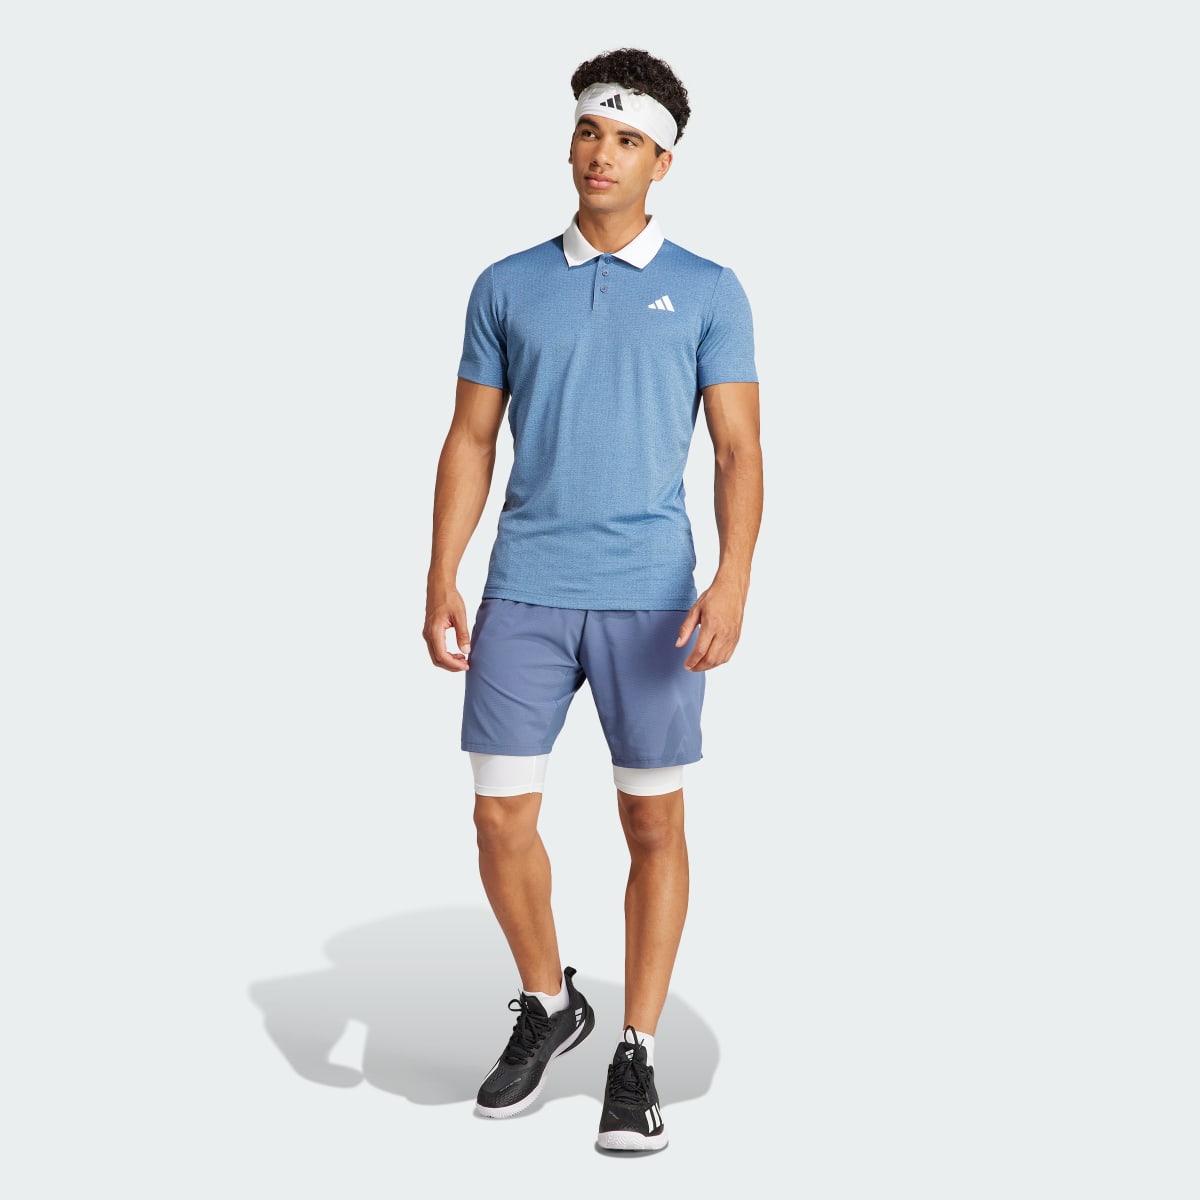 Adidas Koszulka Tennis FreeLift Polo. 6